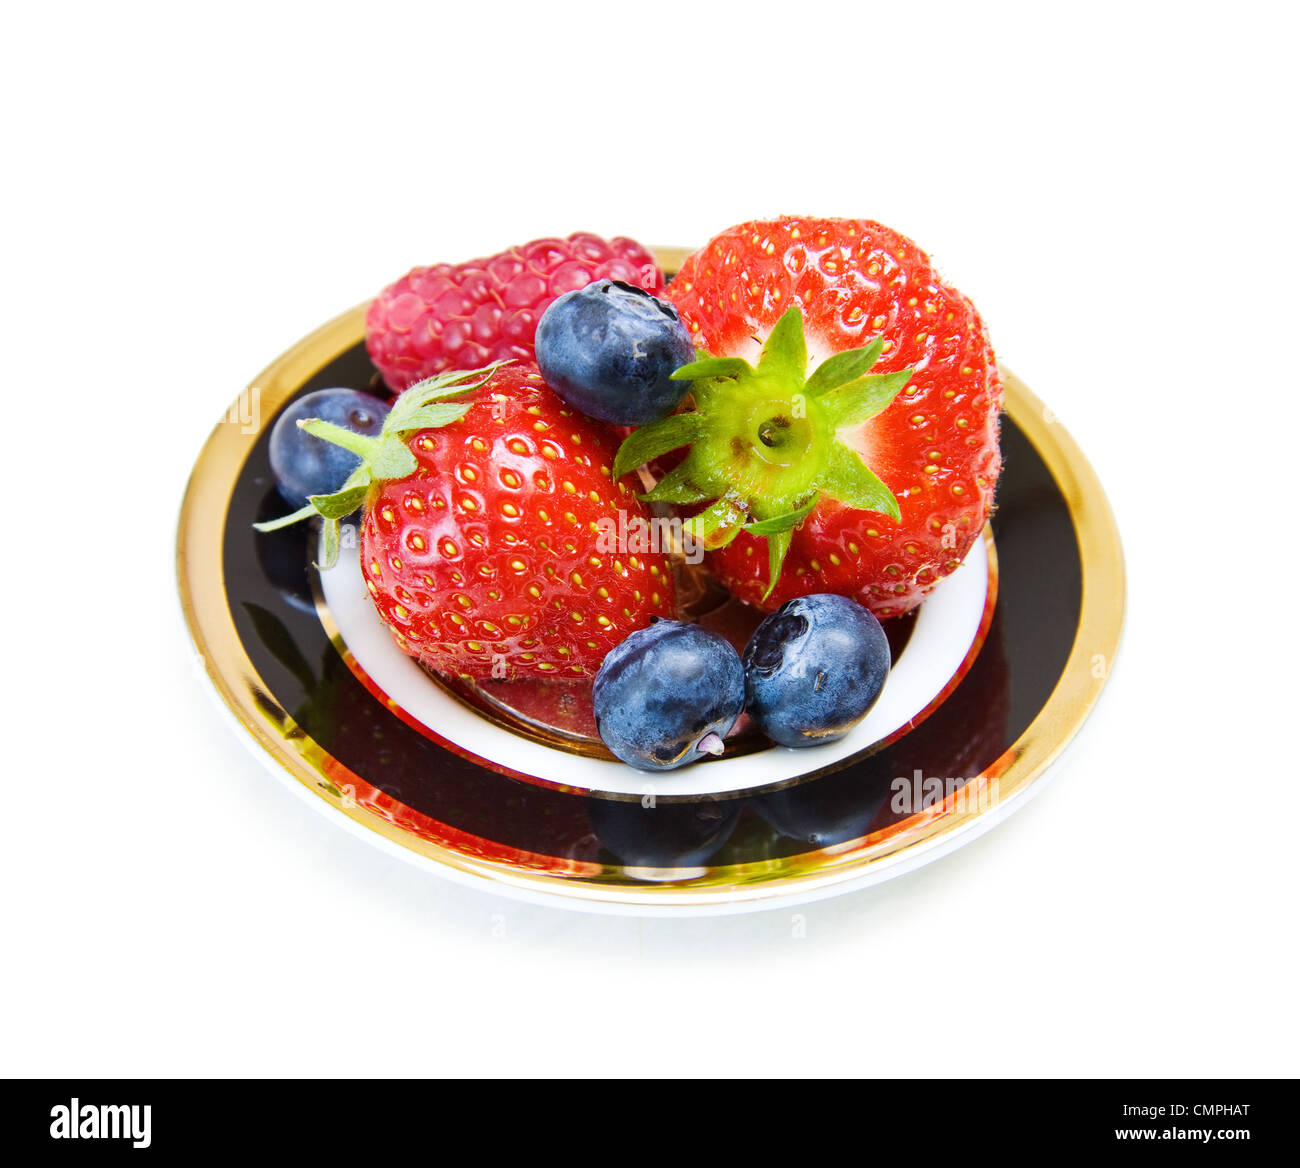 Délice de fruits dessert - fraises, bleuets et framboises sur d'élégants meubles anciens d'or noir et plat. Isolated on white Banque D'Images